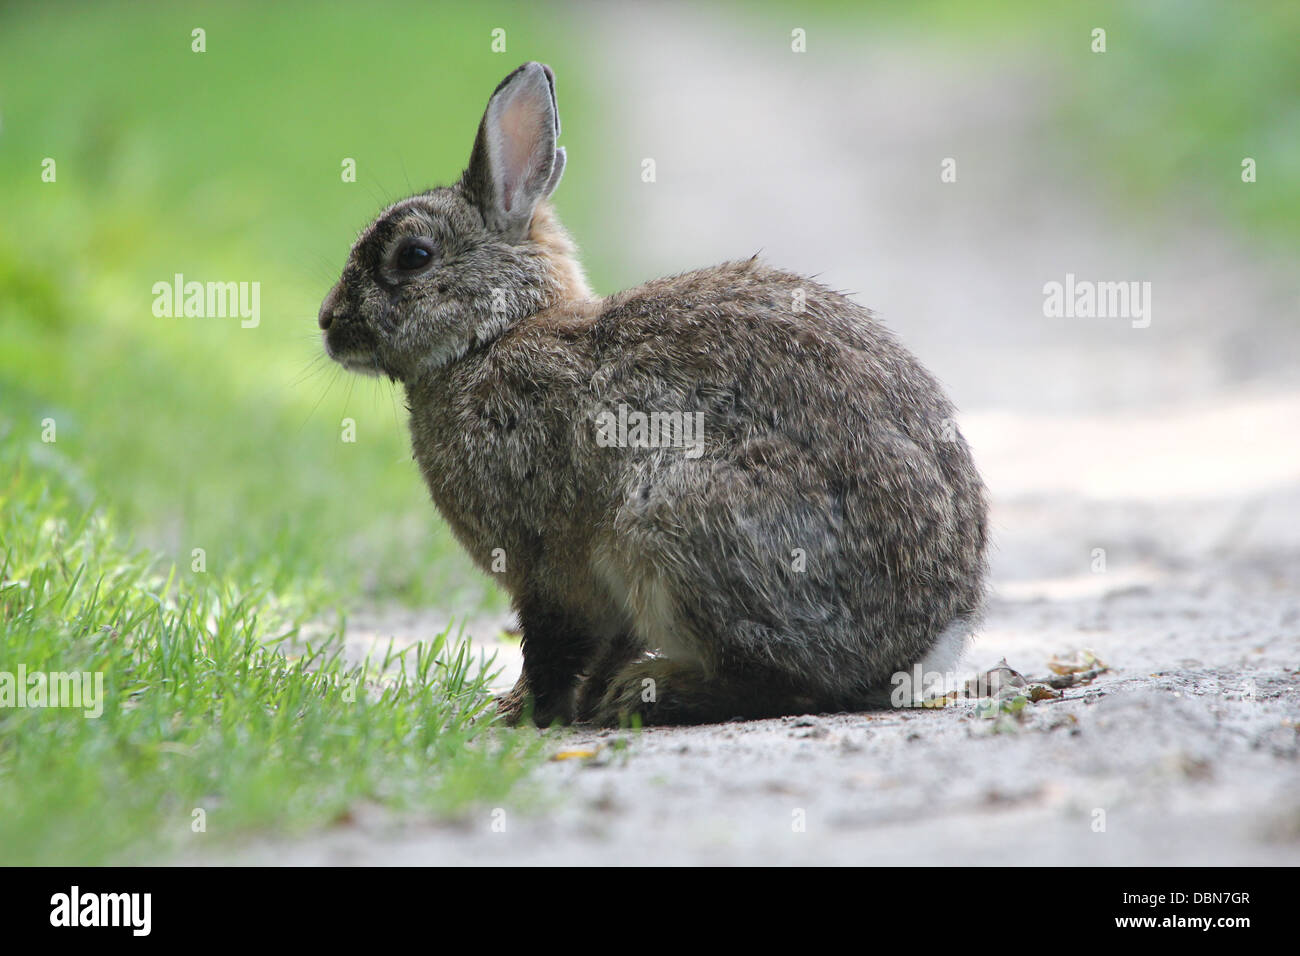 Série de très gros plans détaillés de lapins (Oryctolagus cuniculus) l'alimentation, plus de 80 images en série Banque D'Images